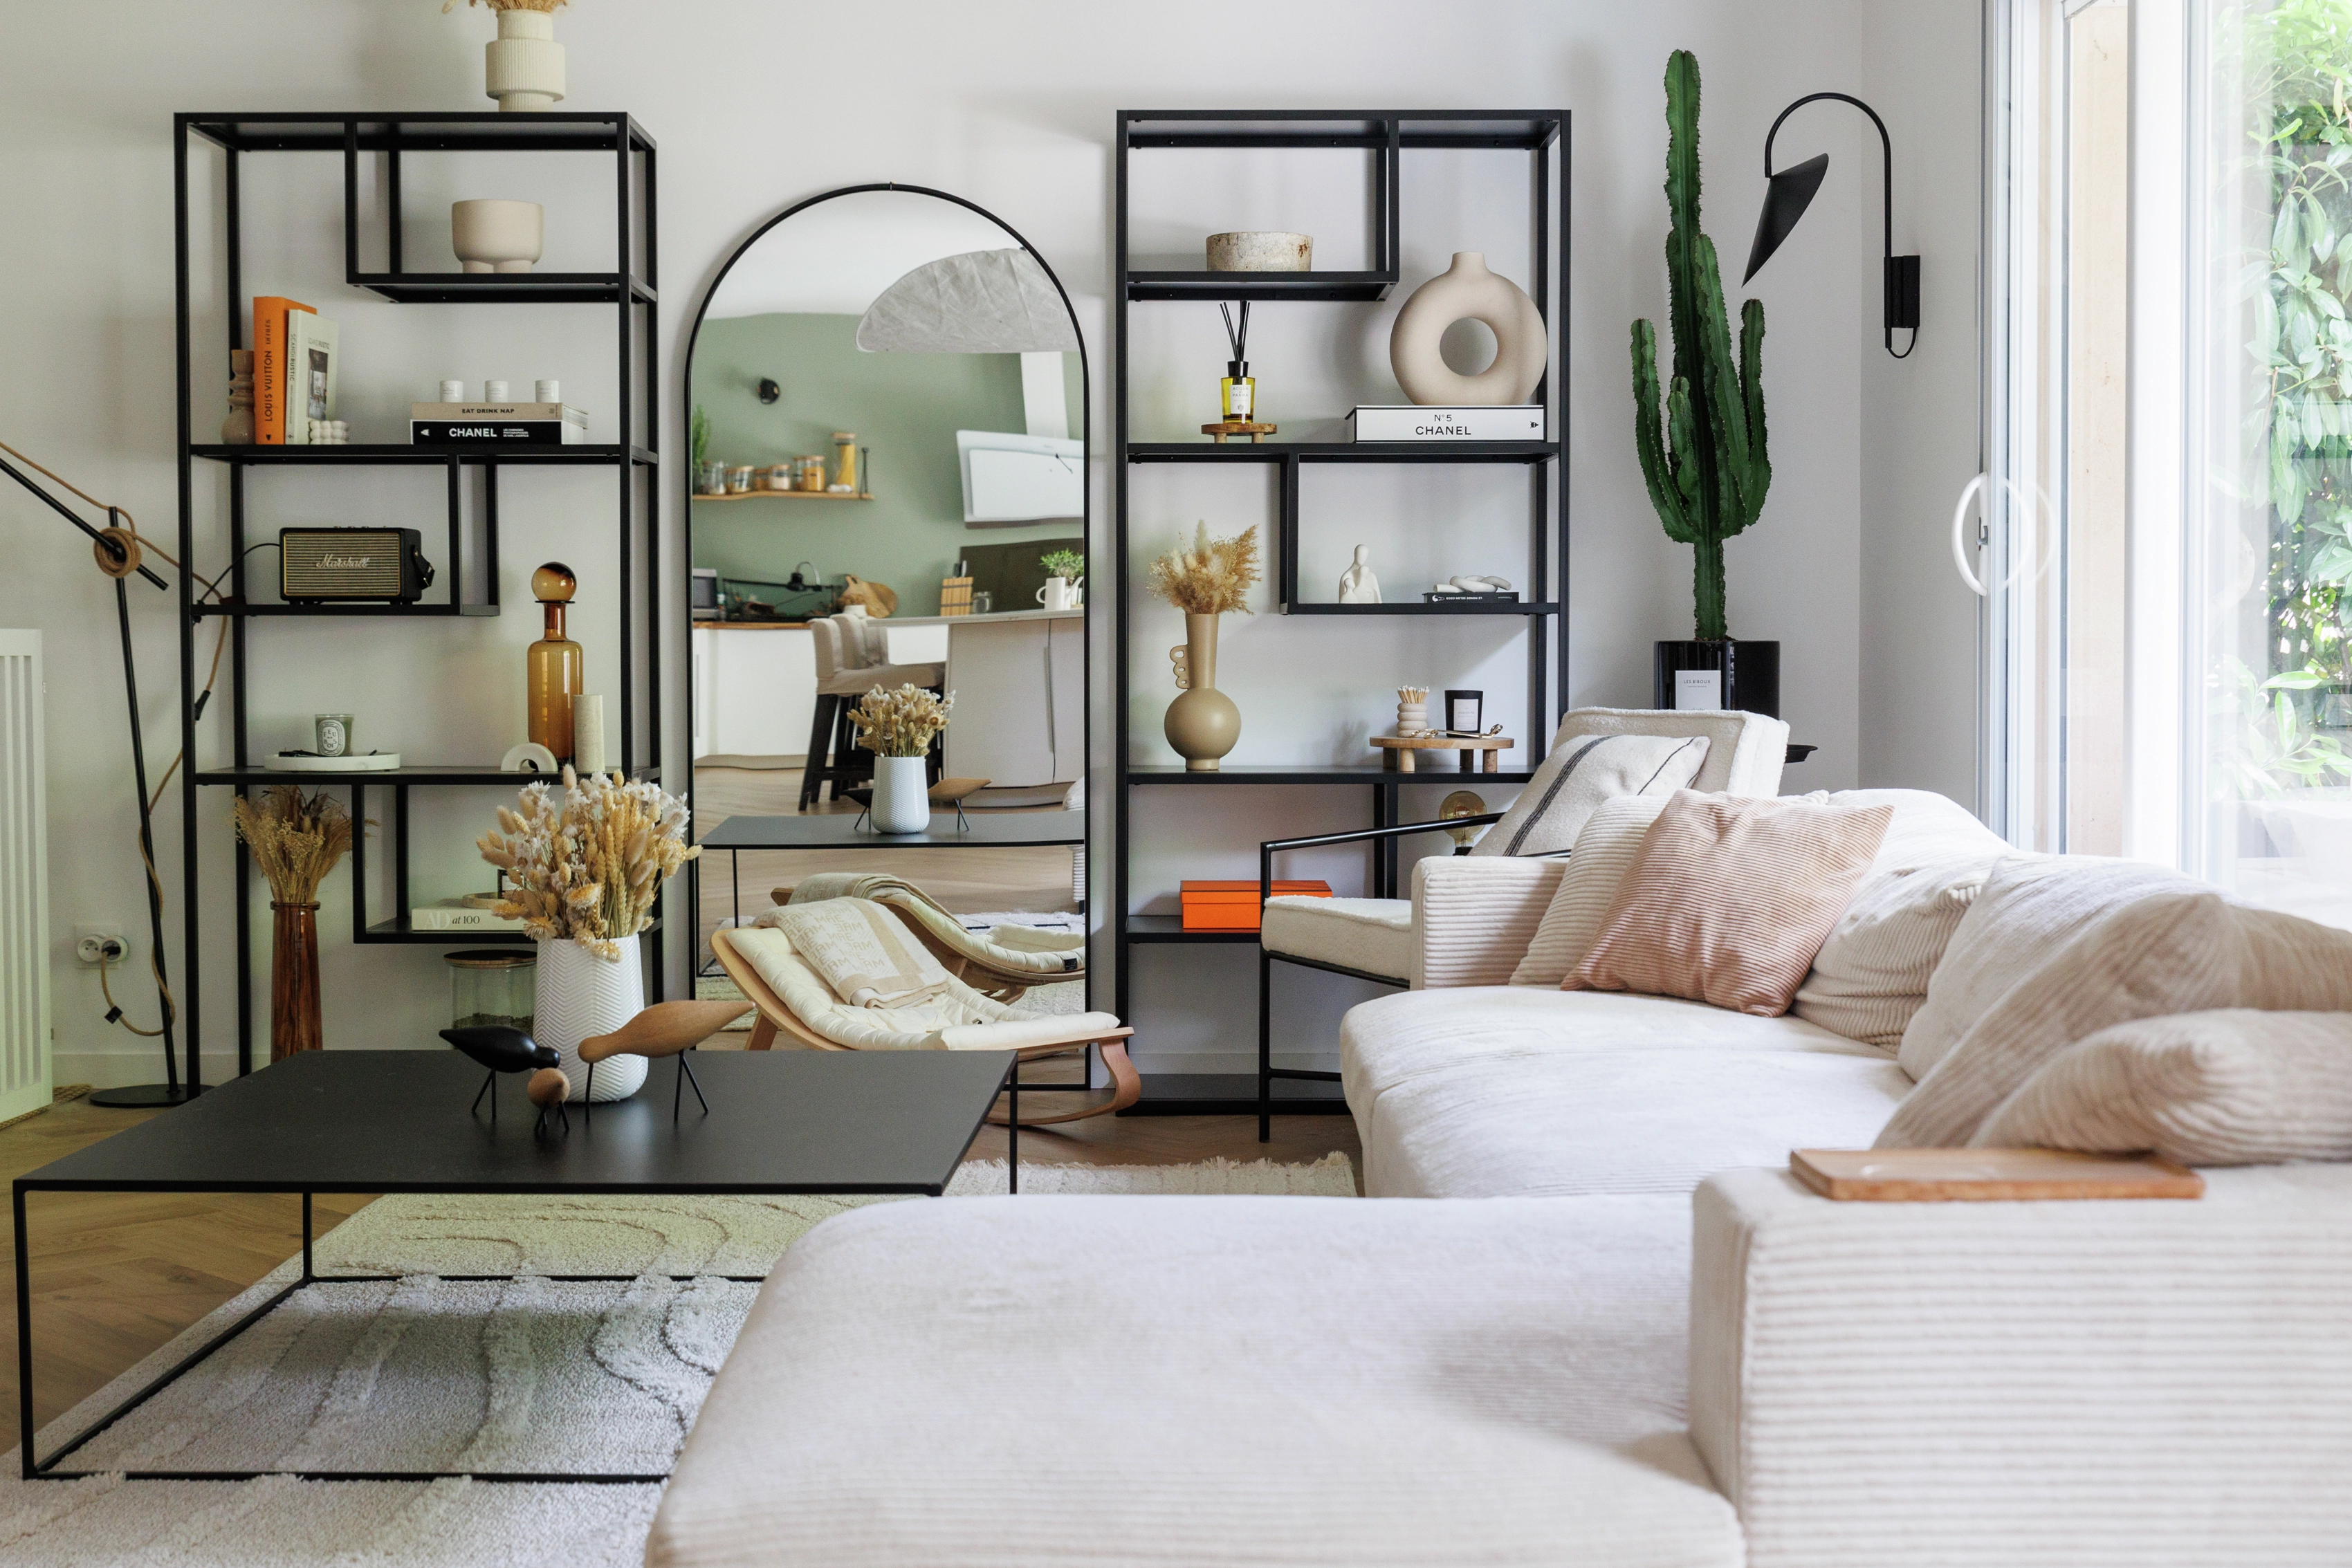 Salon moderne avec canapé blanc, étagères noires, objets décoratifs et plantes d'intérieur.